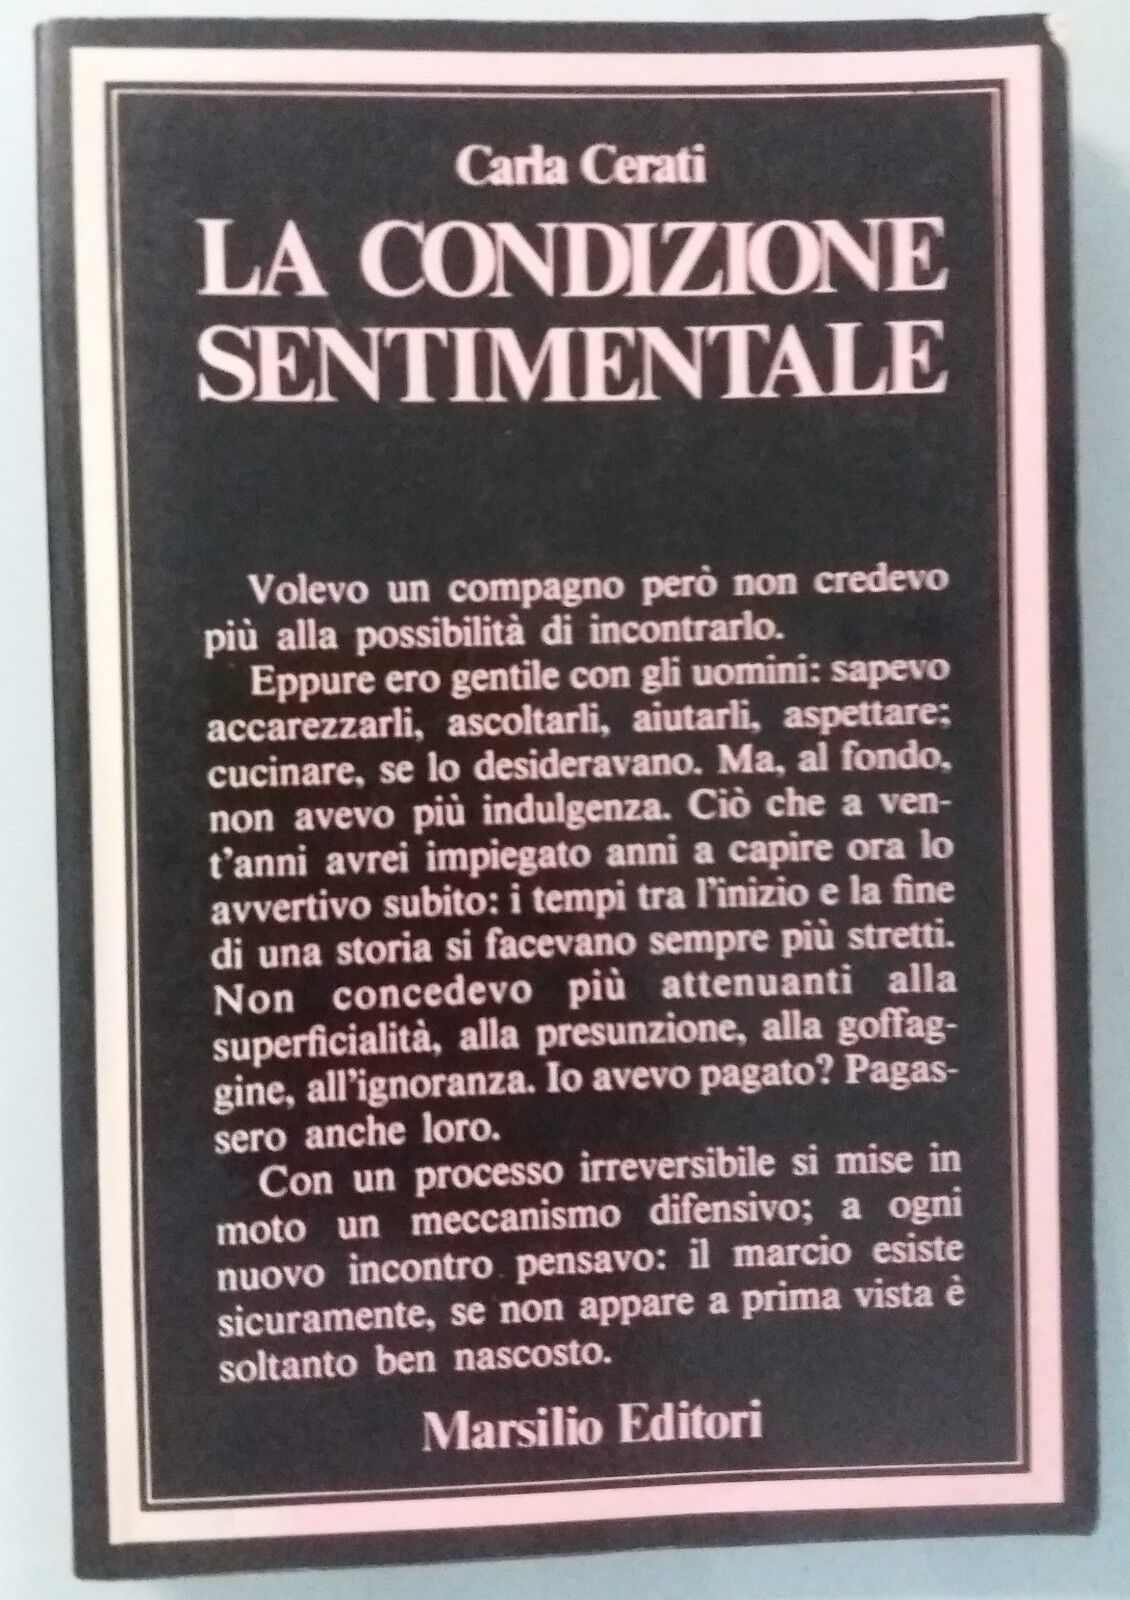 La condizione sentimentale - Carla Cerati - Marsilio Ed. - 1977 - G